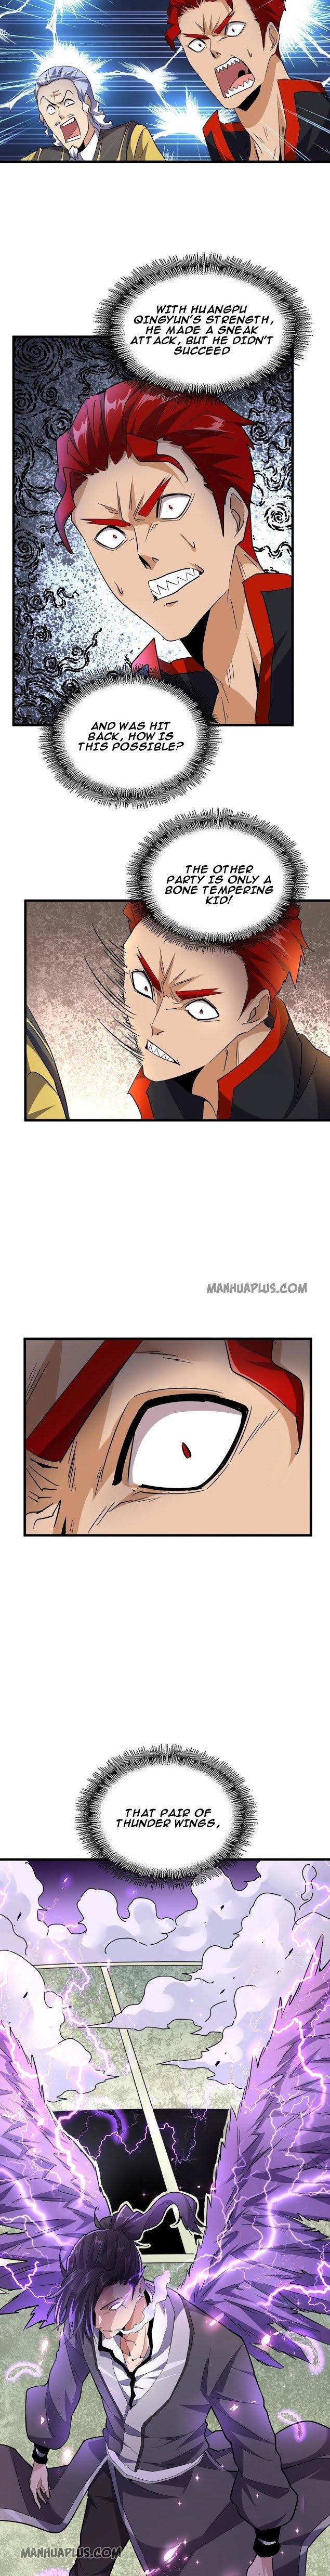 Magic Emperor Chapter 185 page 13 - Mangakakalot